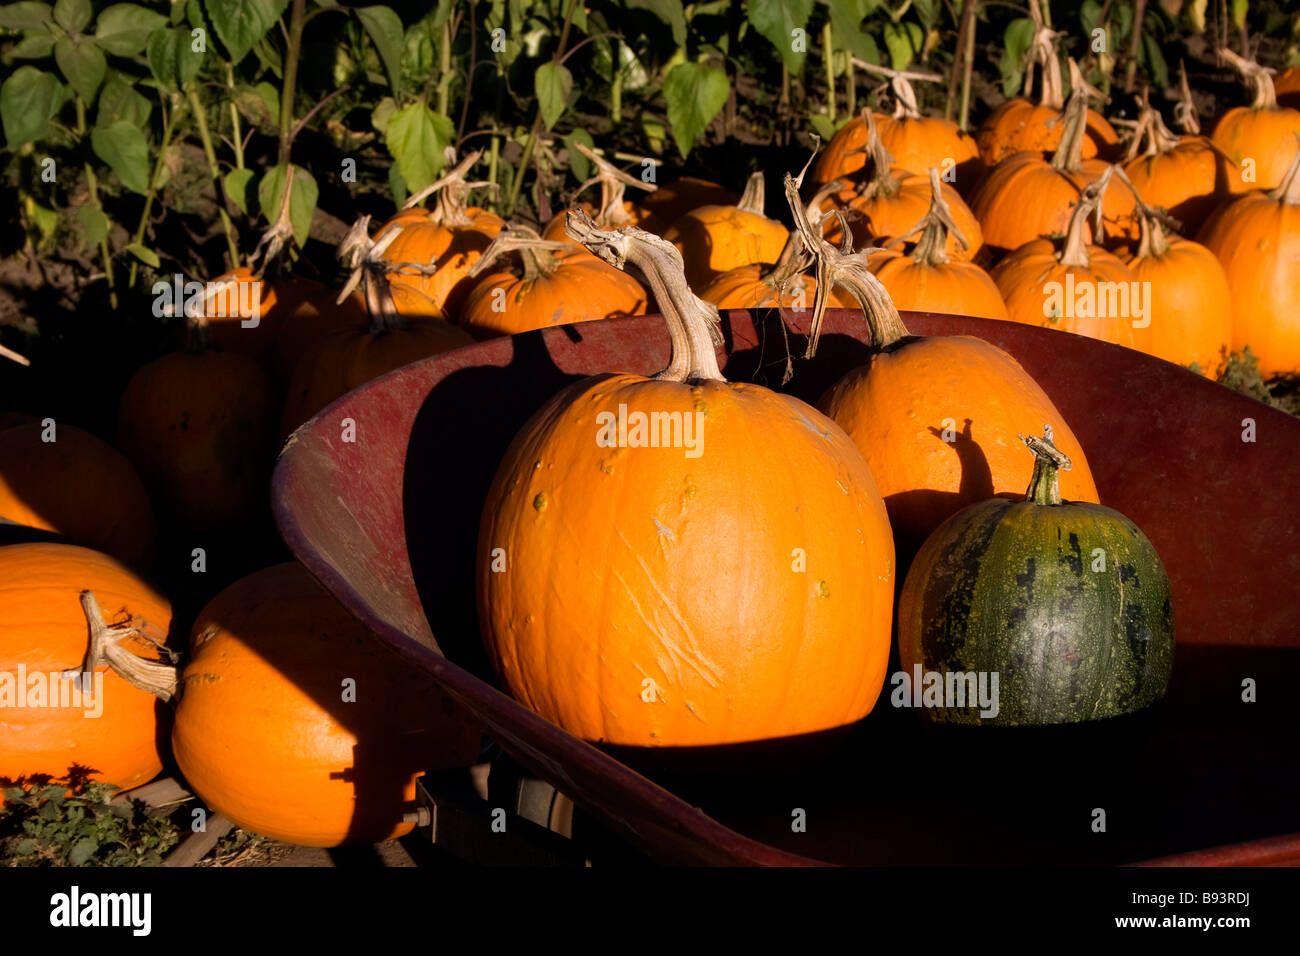 Pumpkins in wheelbarrow in field of pumpkins Stock Photo